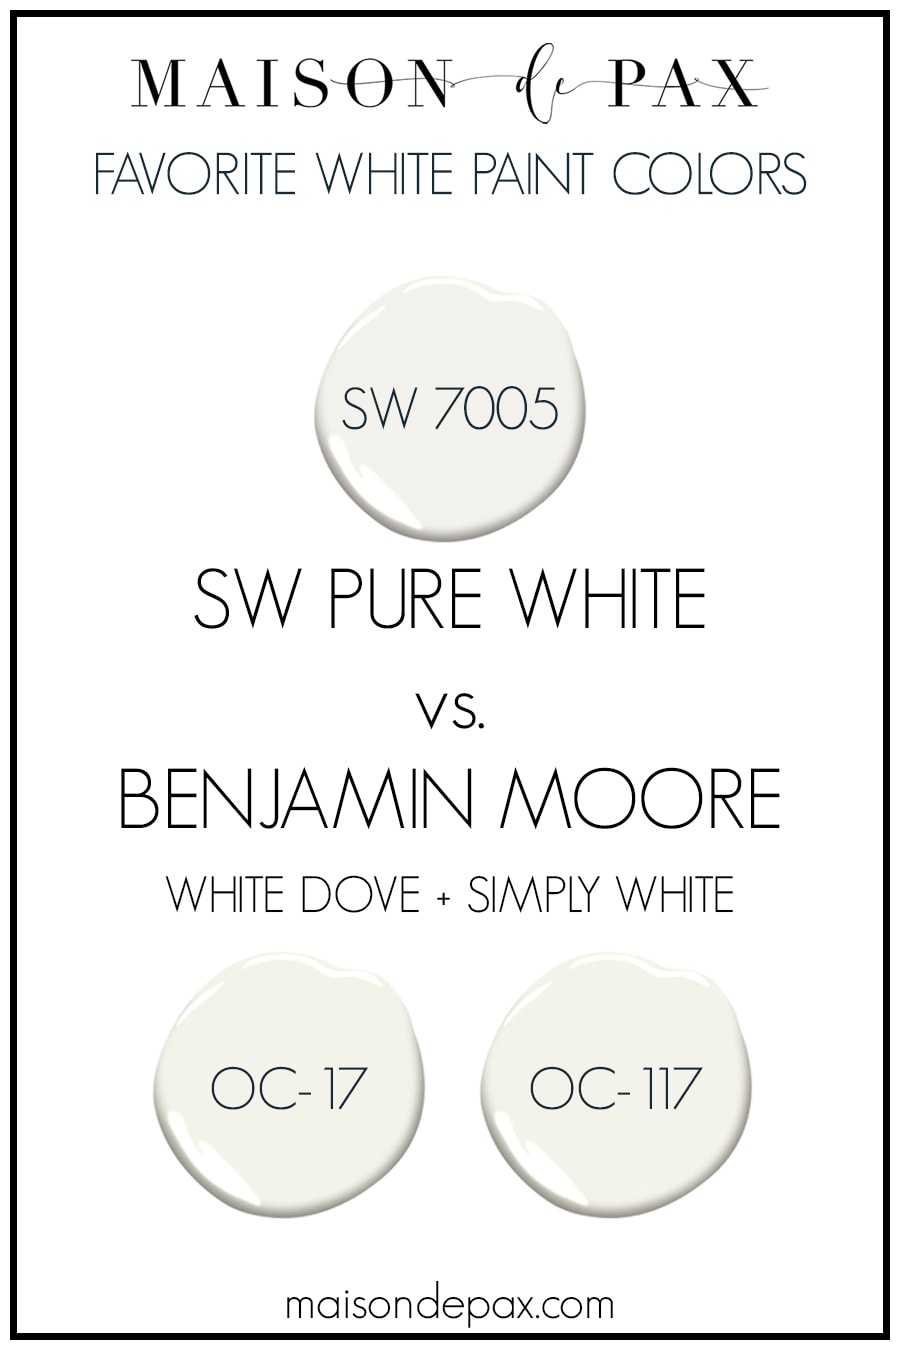 SW pure white vs benjamin moore white dove and simply white